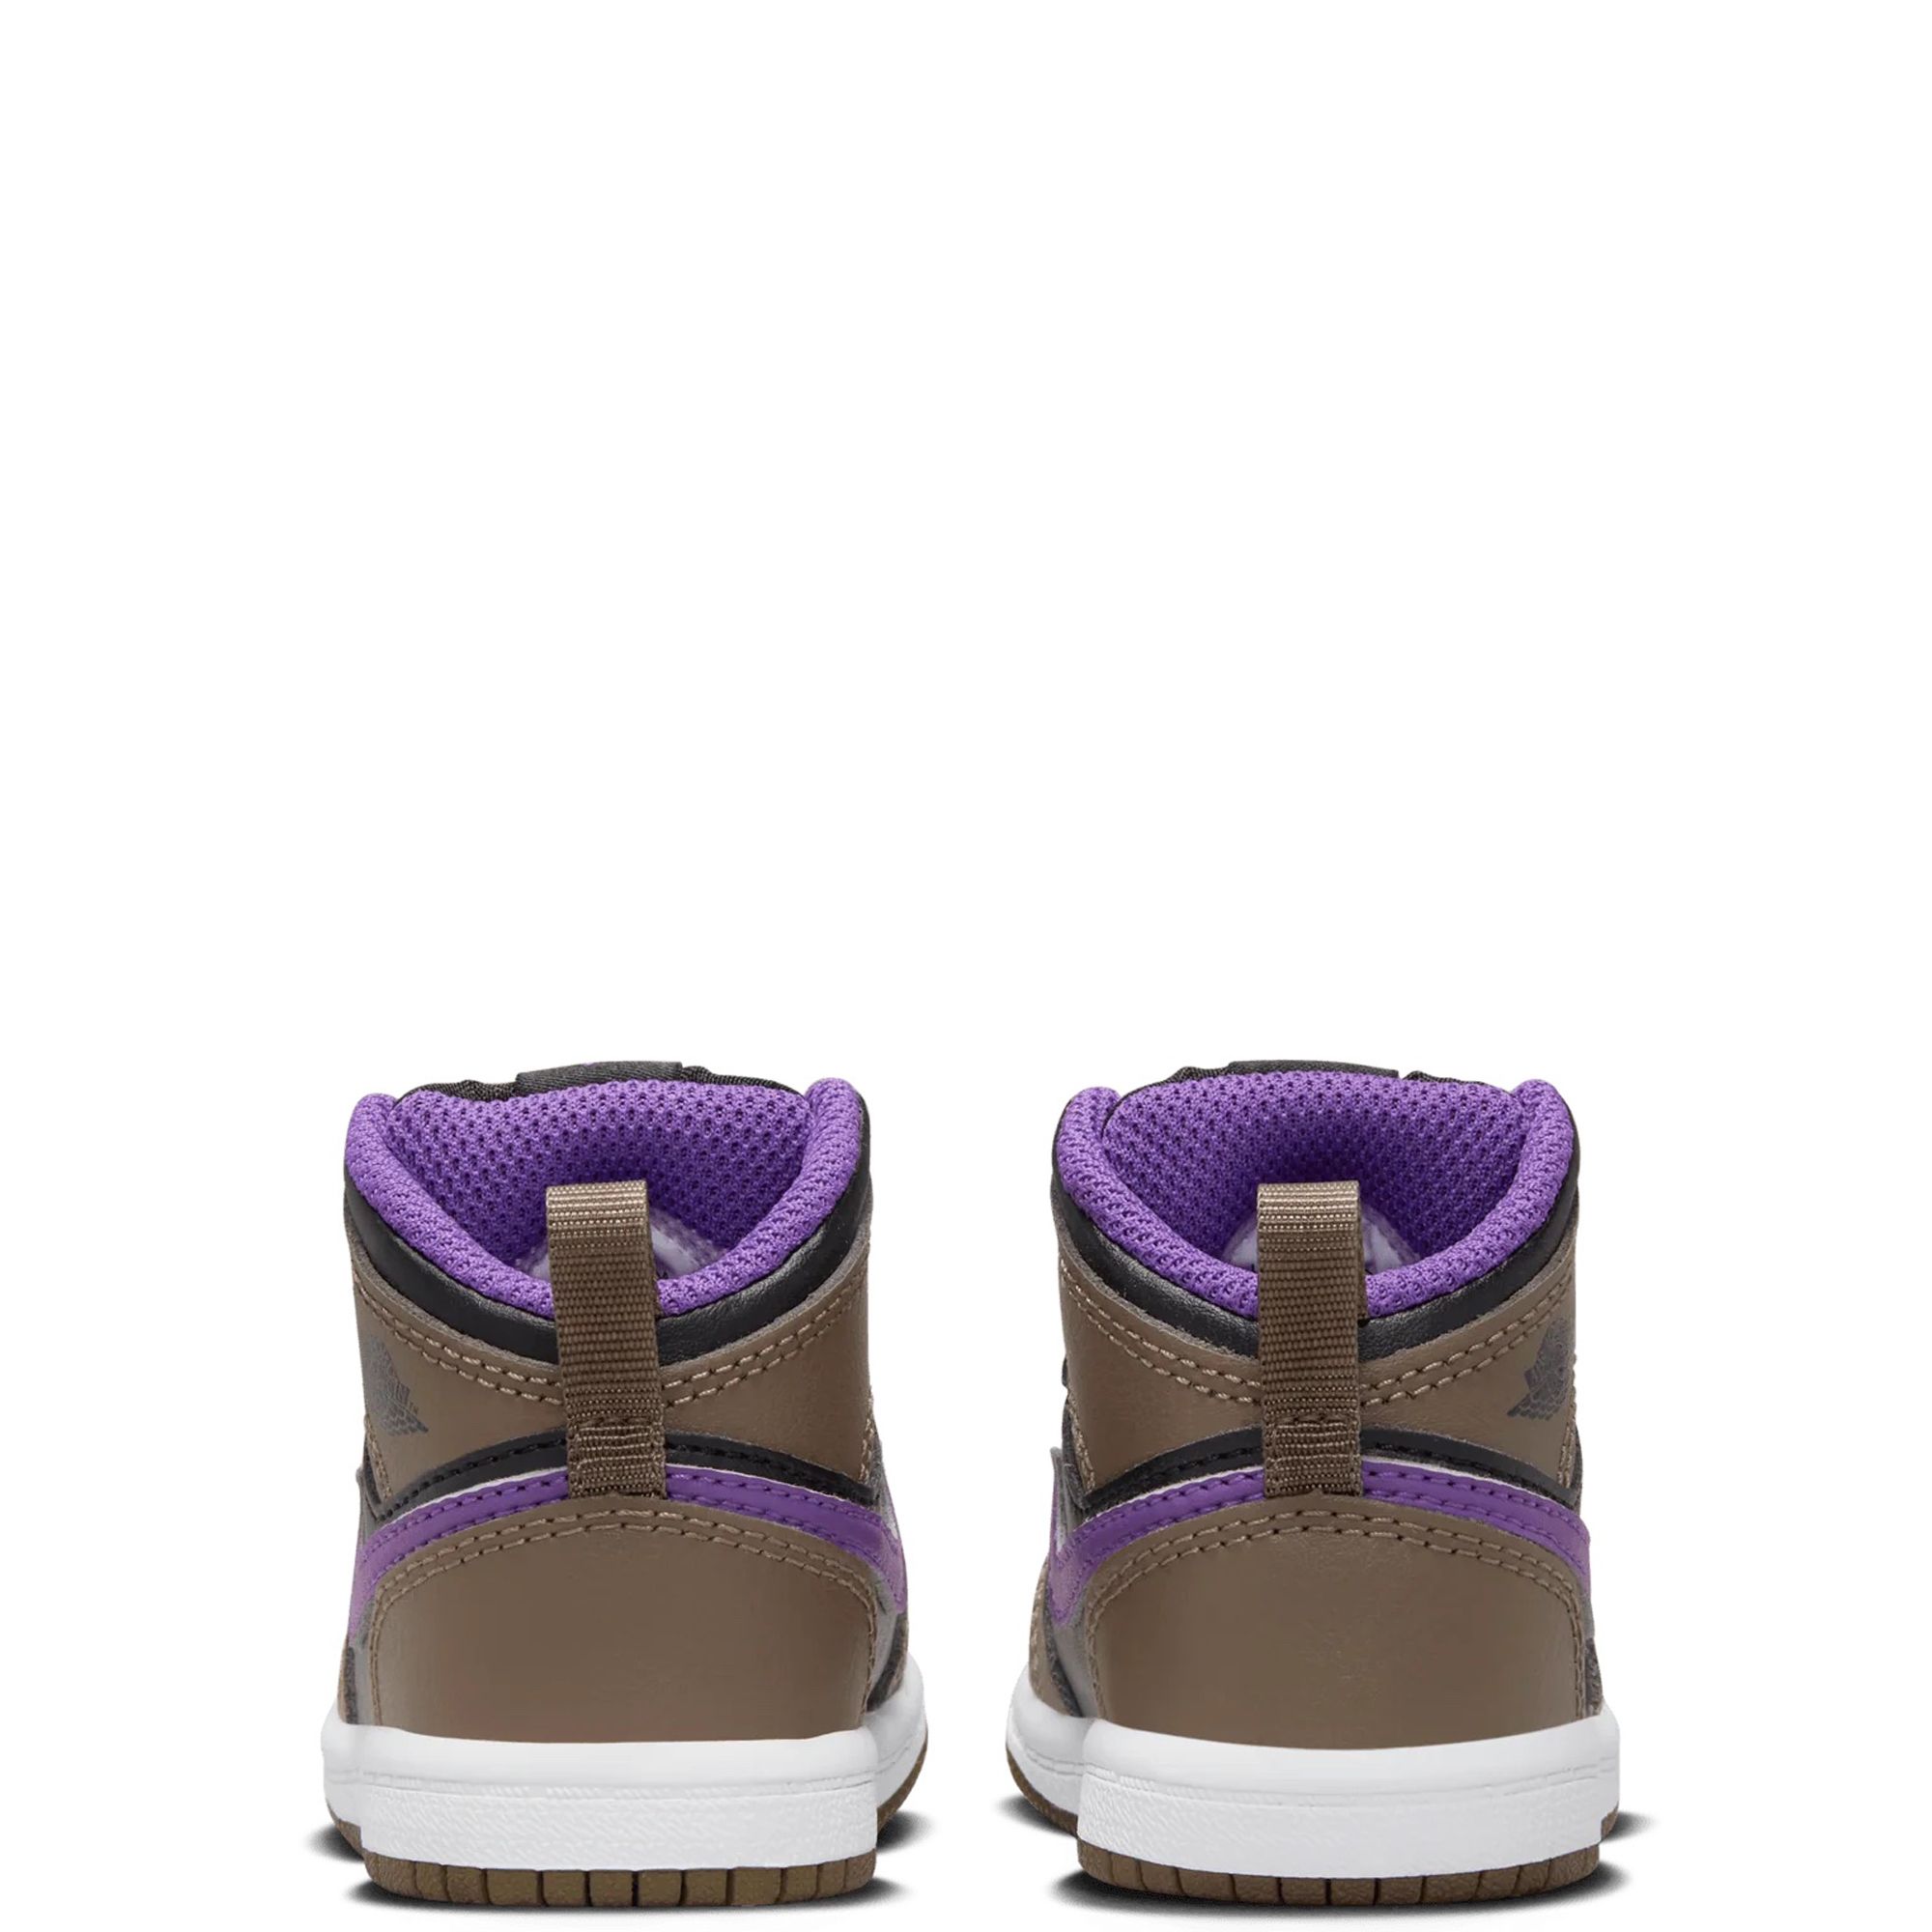 Nike Jordan 3 Palomino Mens Shoes Size 8-12 new sneakers